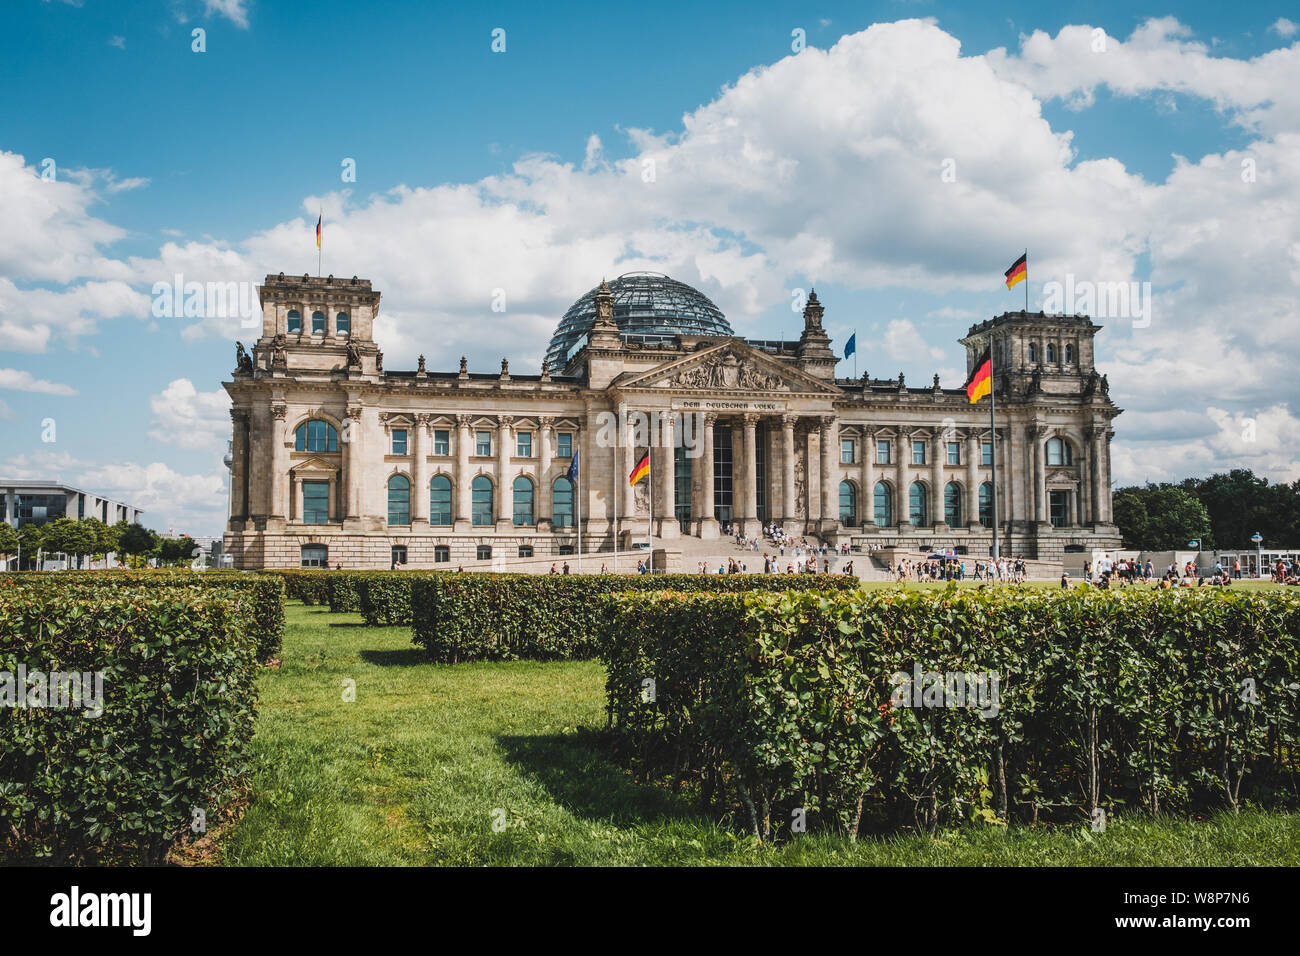 Berlin, Allemagne - Août 2019 : Le bâtiment du Reichstag (Parlement allemand) à Berlin, Allemagne Banque D'Images